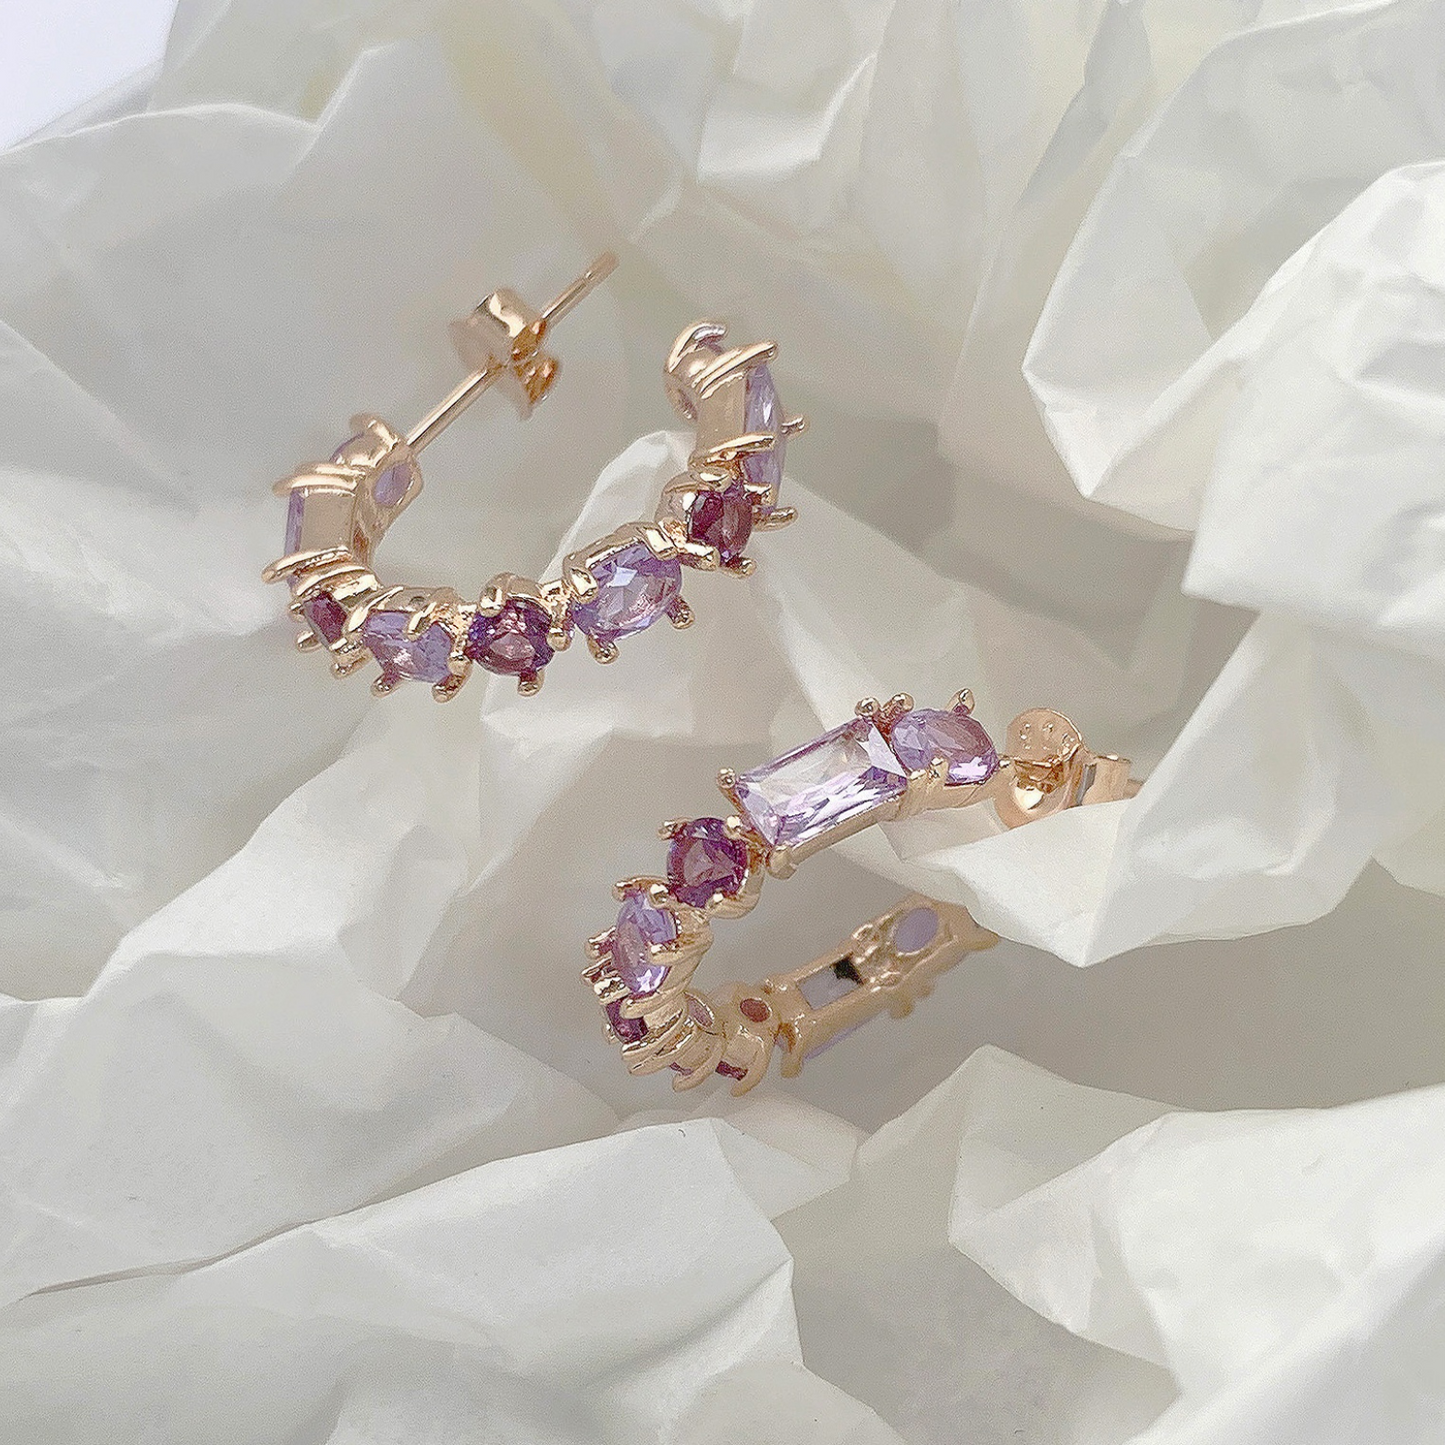 Wang-bi 18k Rose Gold Vermeil Earrings on white background- KORYANGS Brand